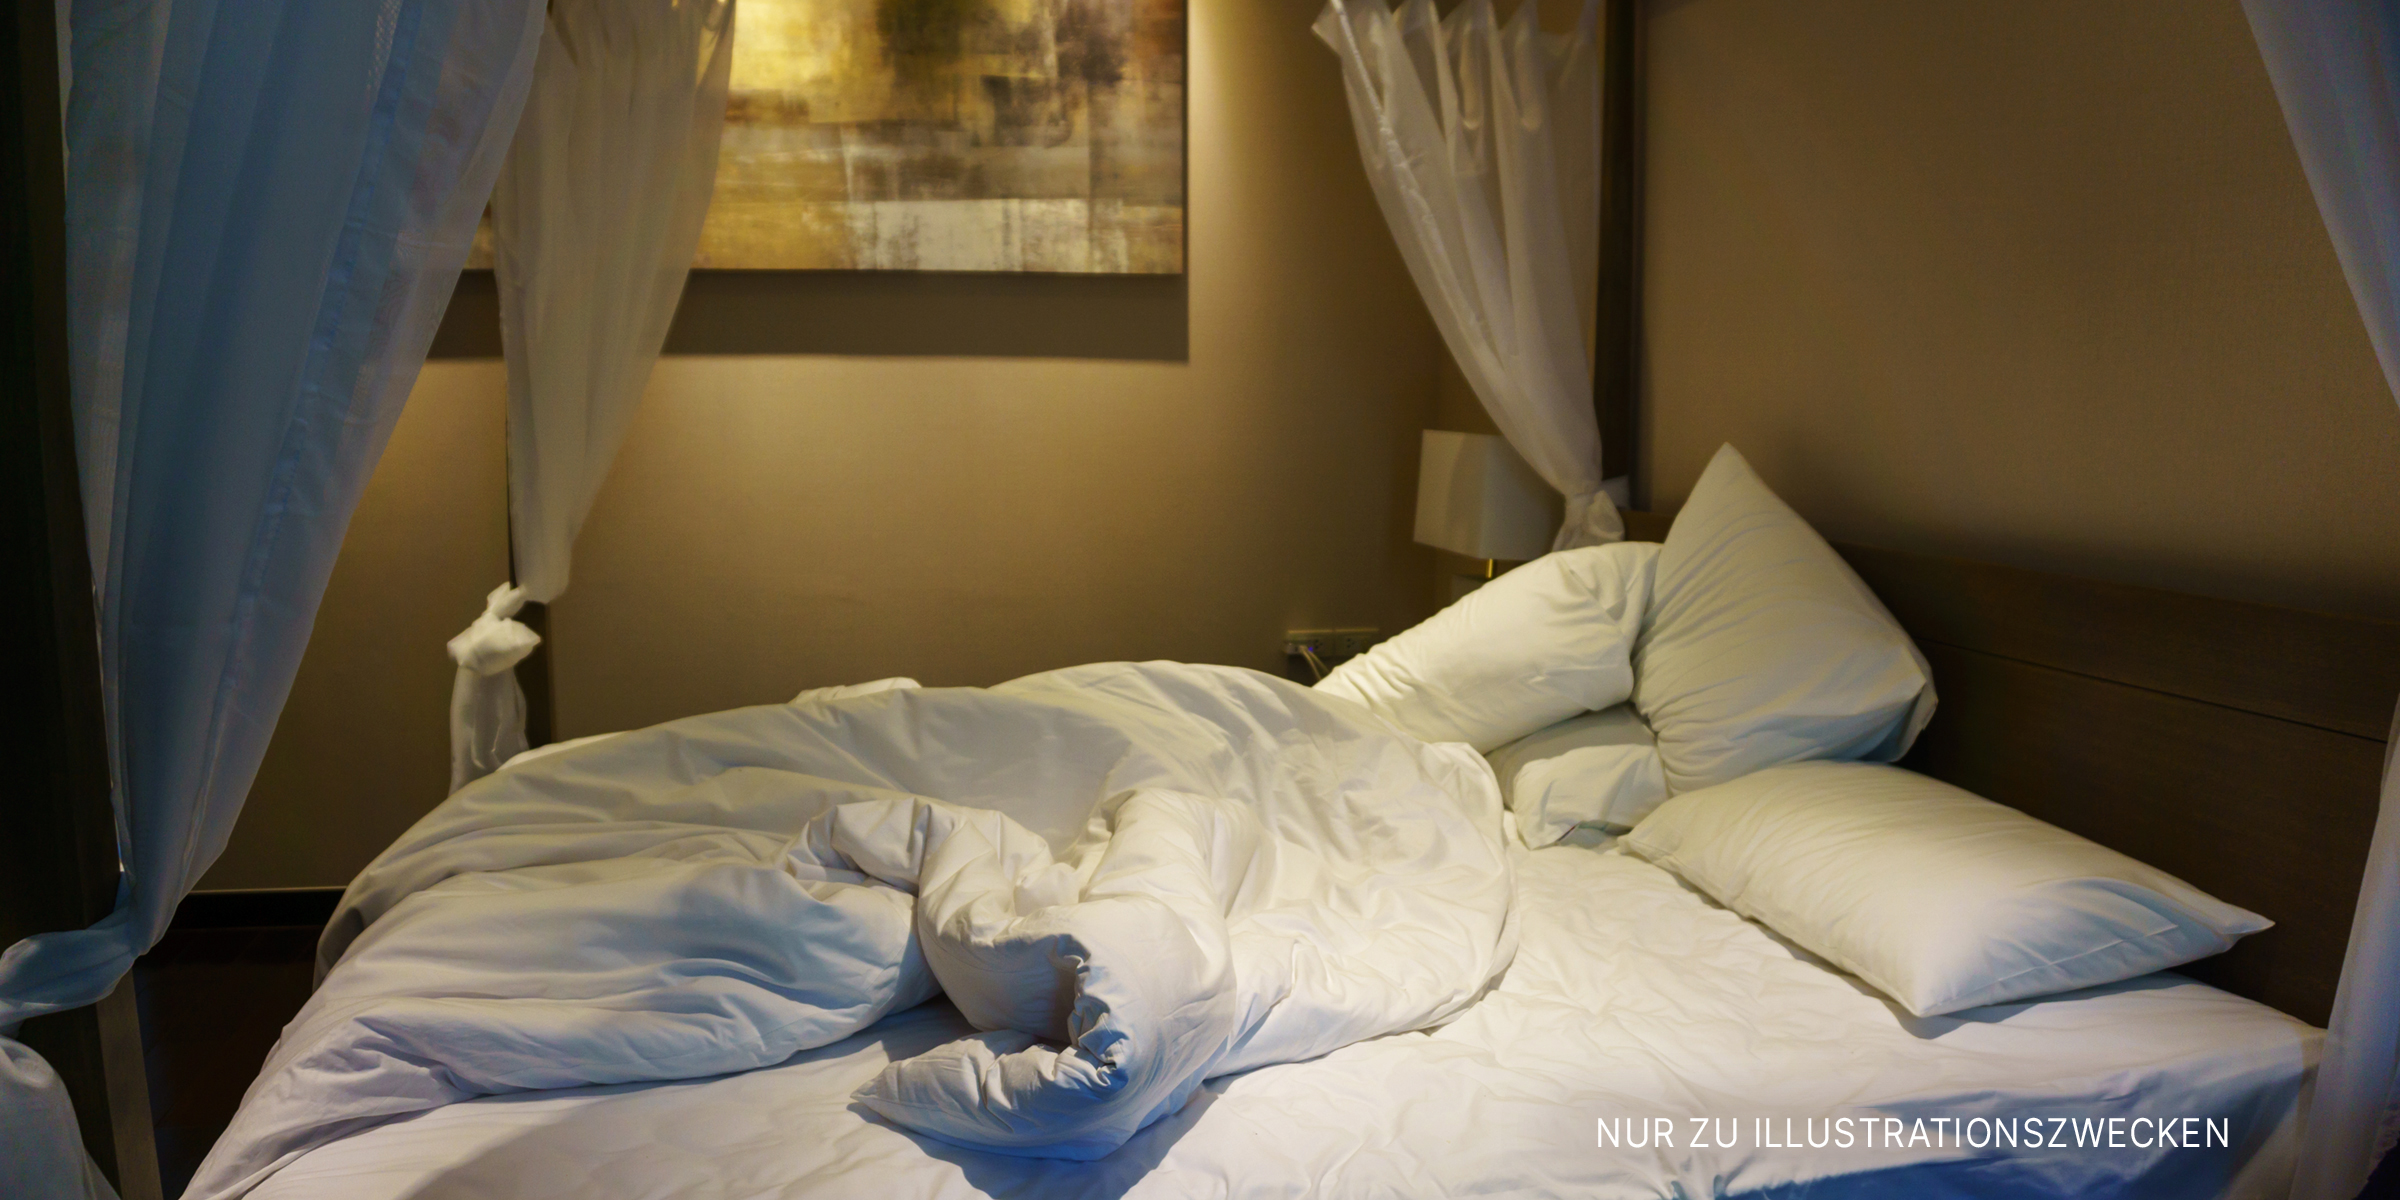 Ein unordentliches Bett | Quelle: Shutterstock